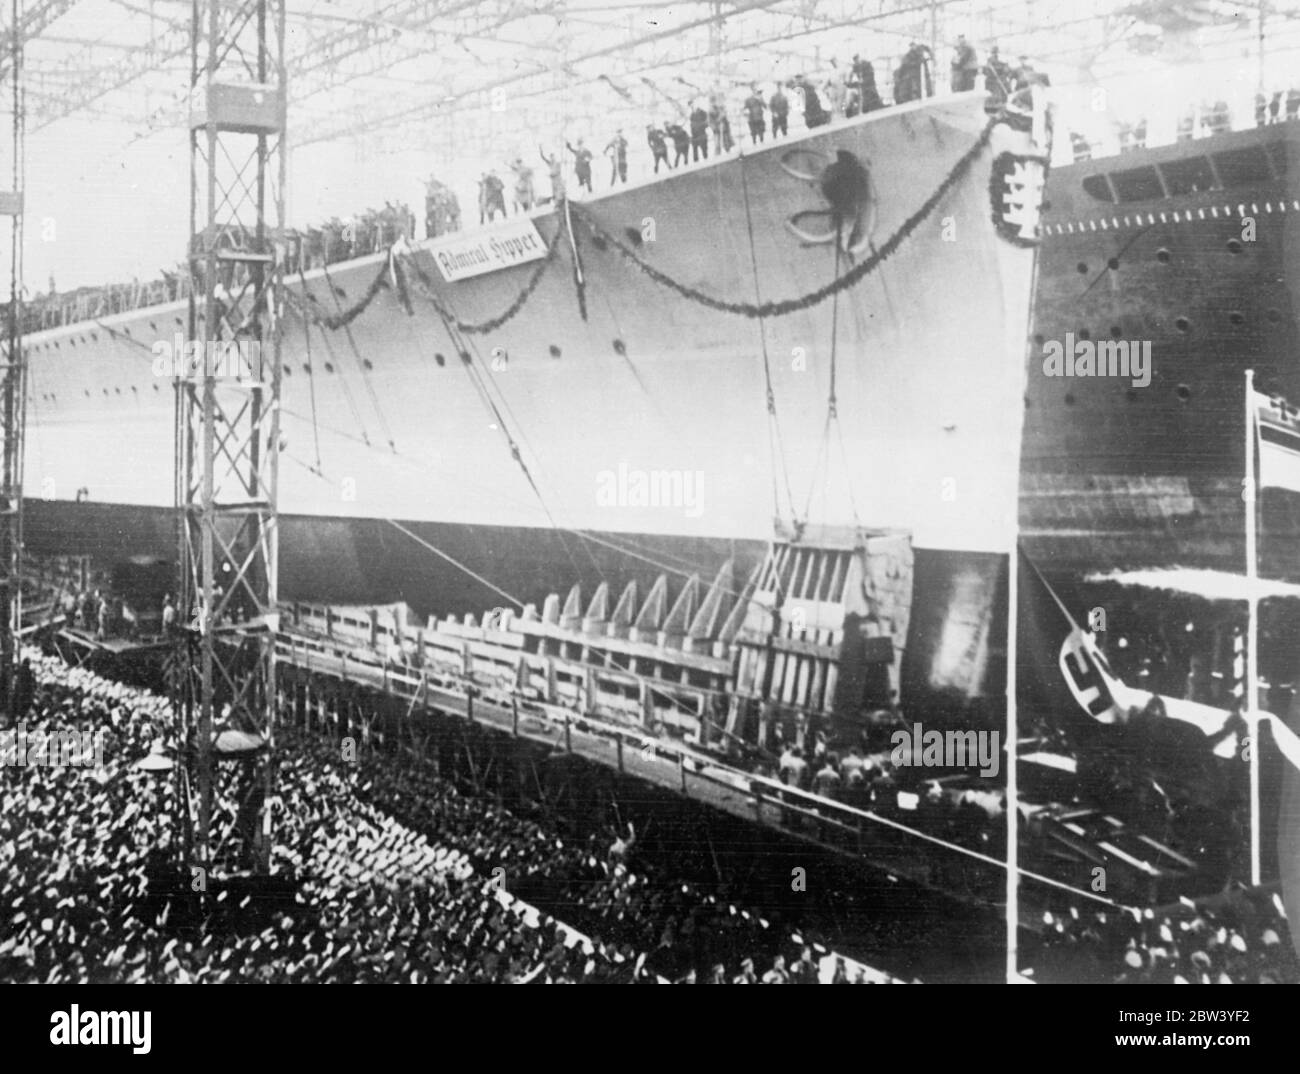 Neue 10,000 Tonnen Germane Cruiser gestartet , benannt nach ADML, die Hartlepool bombardiert . Der "Admiral Hipper", der nach Abschluss des Naval-Abkommens mit Großbritannien als erster von drei 10,000 t-Kreuzer in das deutsche Bauprogramm aufgenommen wurde, wurde auf den hamburger Werften in Blohm und Voss gestartet. Sie wird mit 8 Zoll Kanonen bewaffnet sein. Der neue Kreuzer wurde von Frau Raeder, Frau des Oberbefehlshabers der Deutschen Marine, benannt. 8. Februar 1936 ADML-Hipper befehligte die Schlachtkreuzer Seydlitz , Moltke und Blucher bei der Bombardierung von Hartlepool am 16. Dezember 1914 , und führte später die Ge Stockfoto